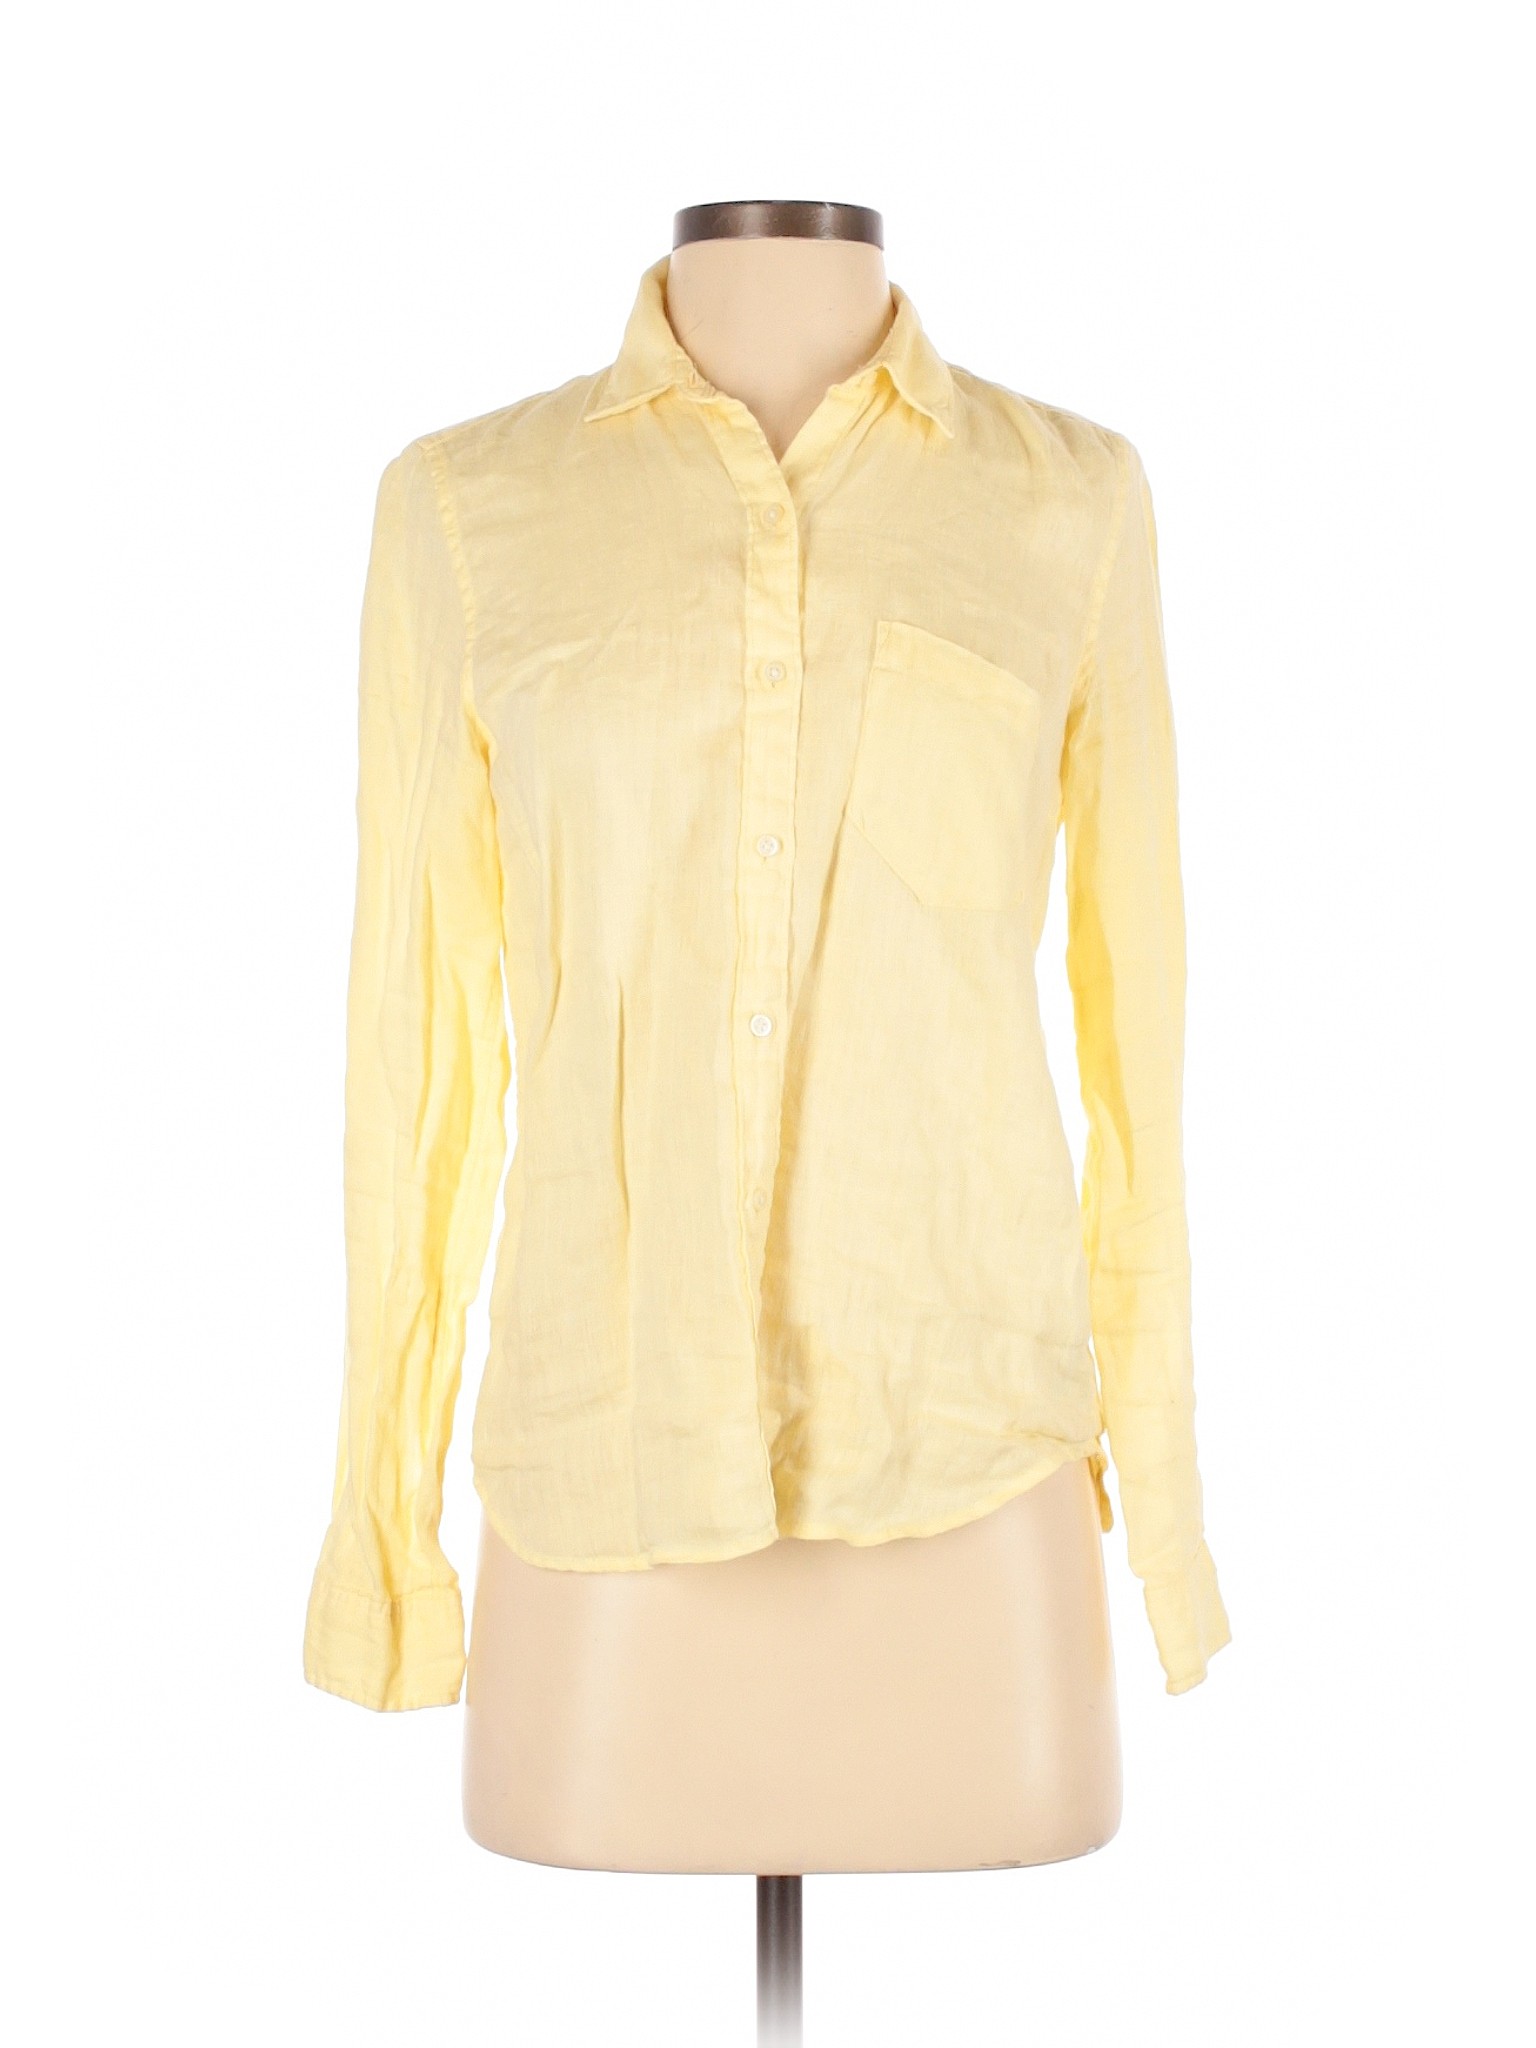 Gap Women Yellow Long Sleeve Button-Down Shirt XS | eBay